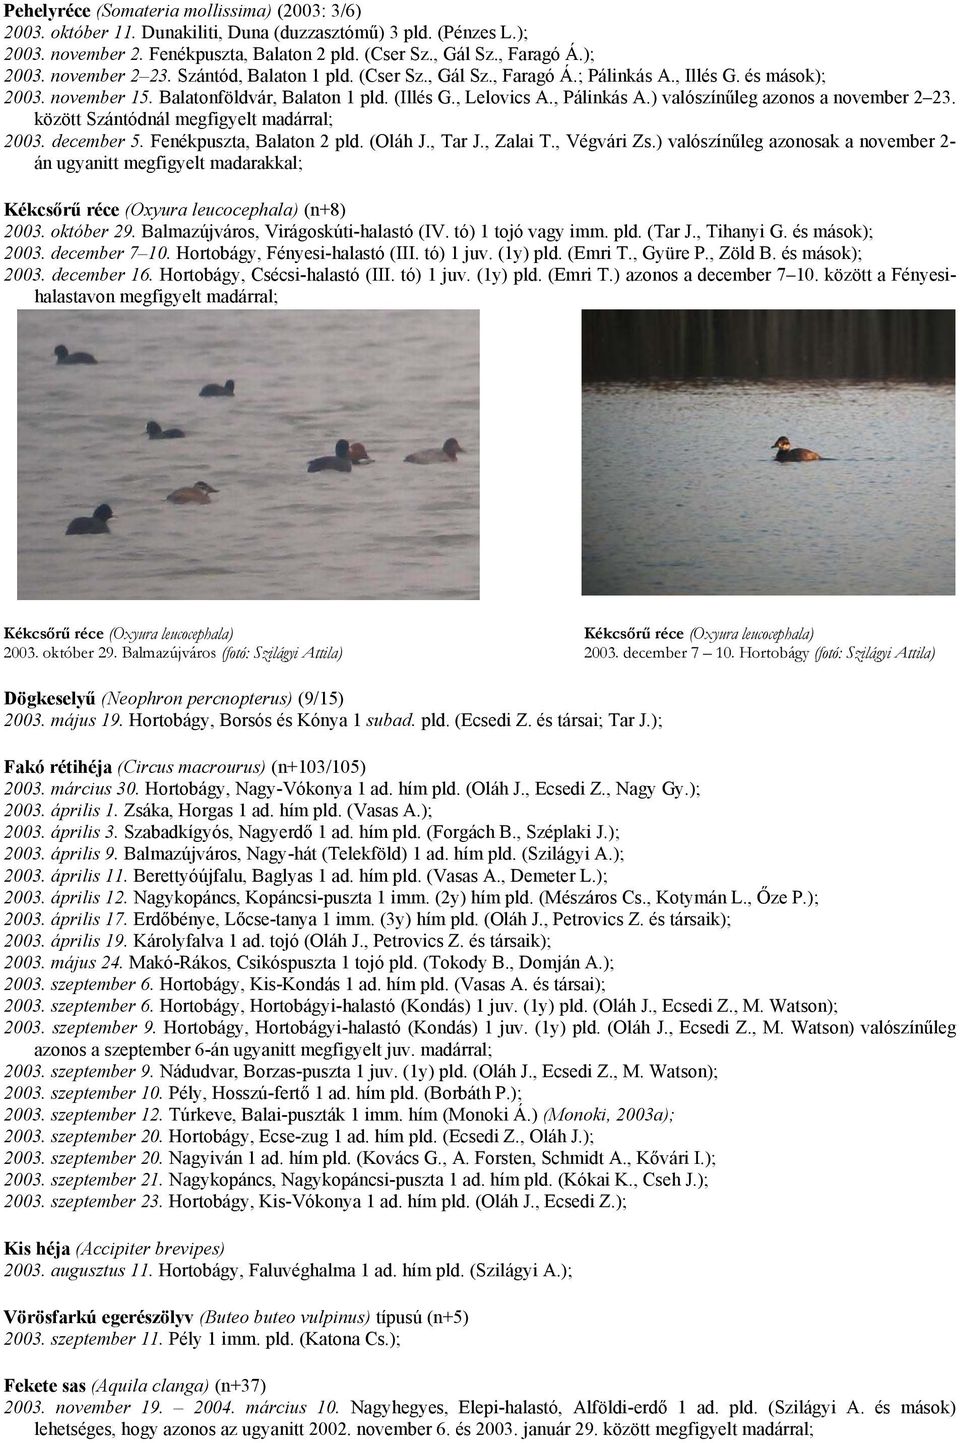 ) valószínűleg azonos a november 2 23. között Szántódnál megfigyelt madárral; 2003. december 5. Fenékpuszta, Balaton 2 pld. (Oláh J., Tar J., Zalai T., Végvári Zs.